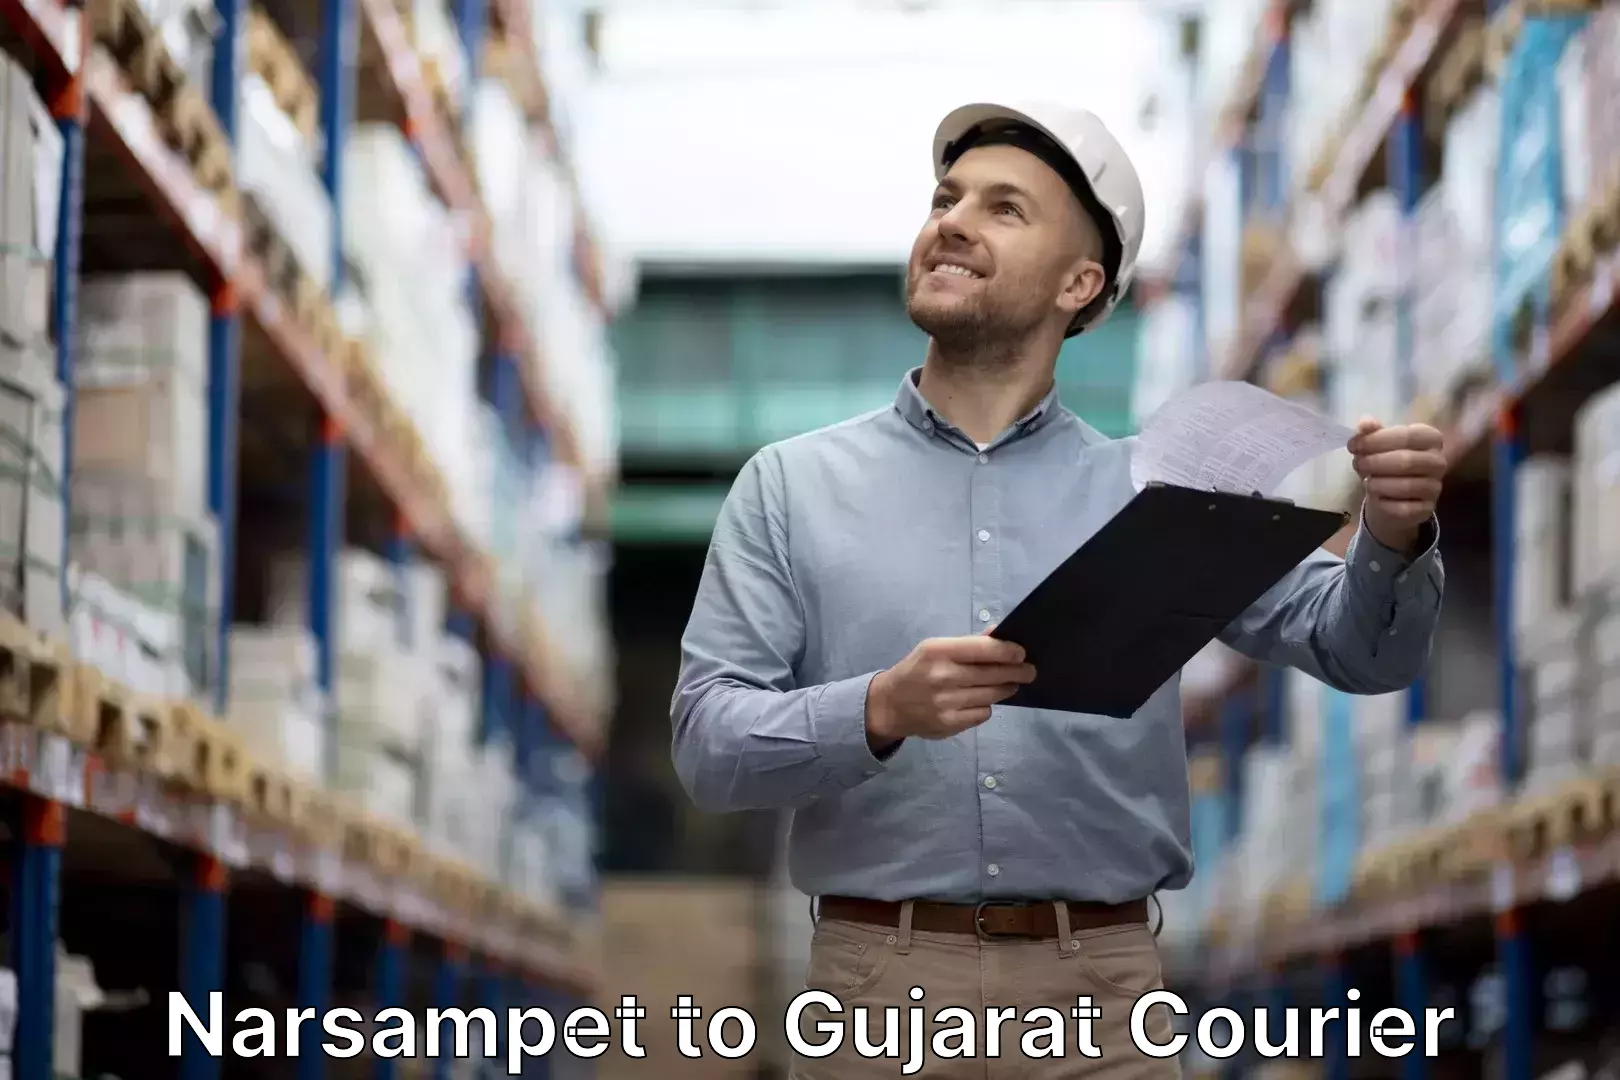 Luggage transport service Narsampet to Gujarat